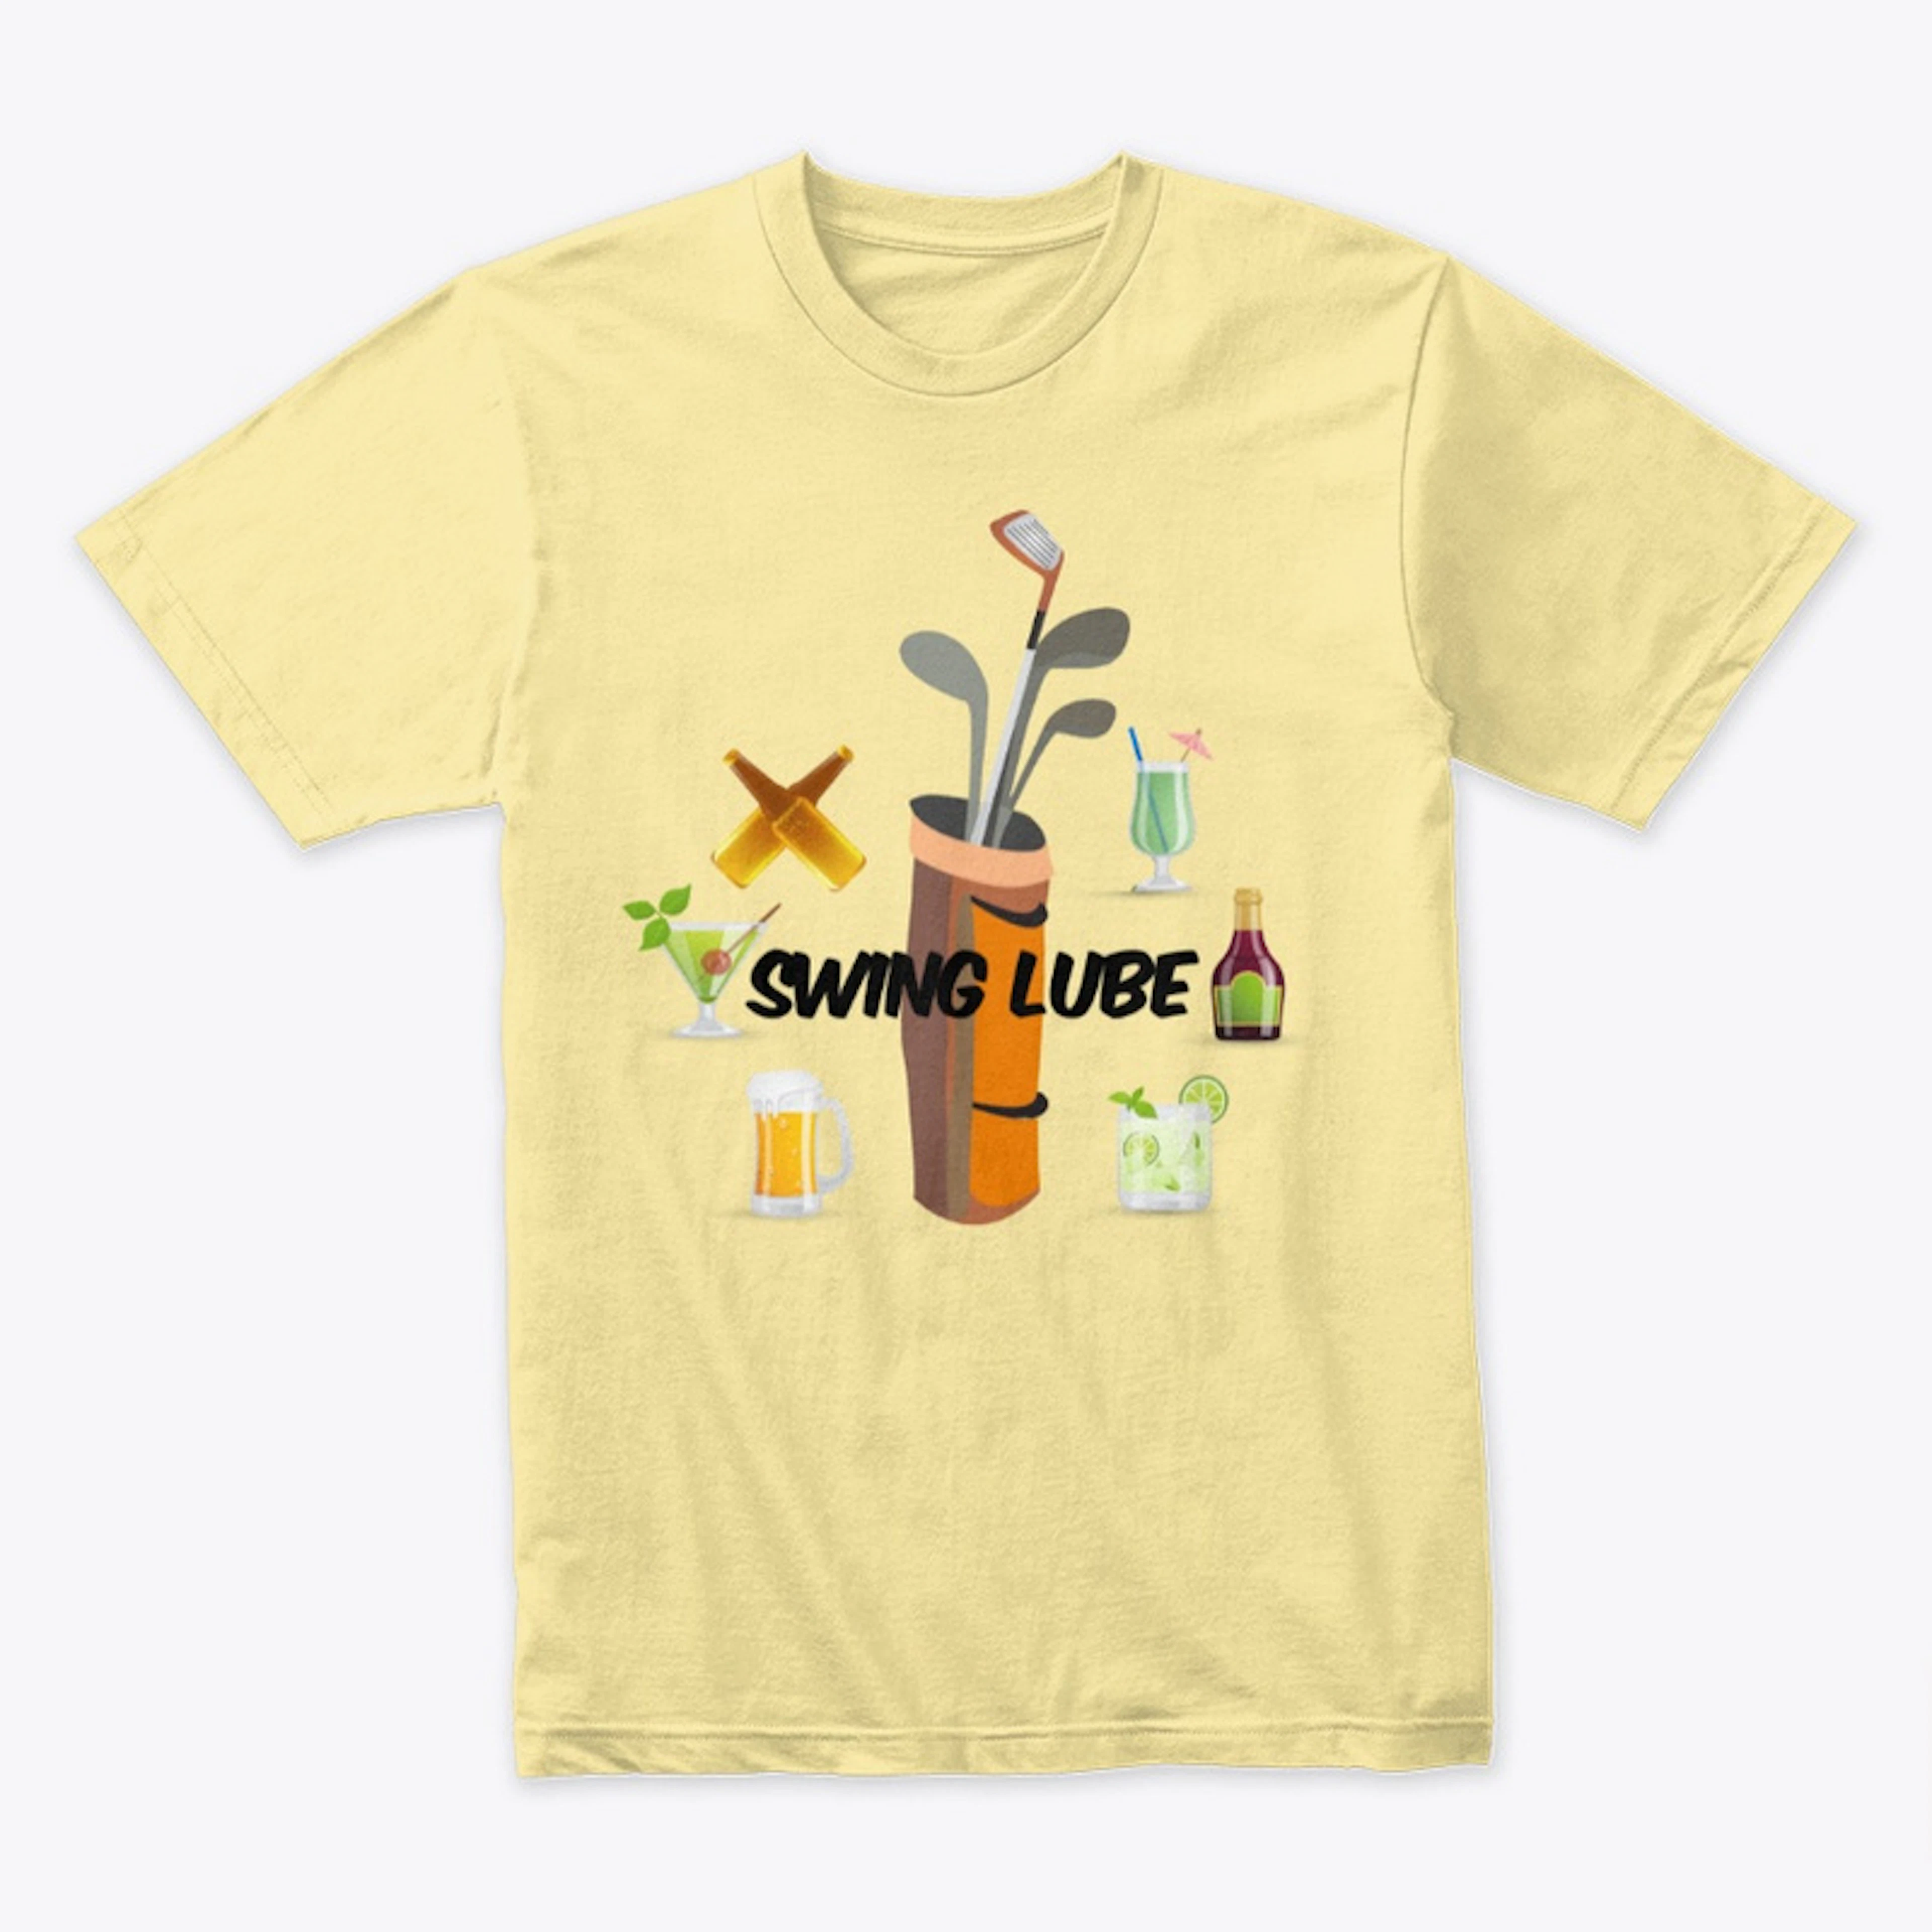 Swing Lube - Golf Tee